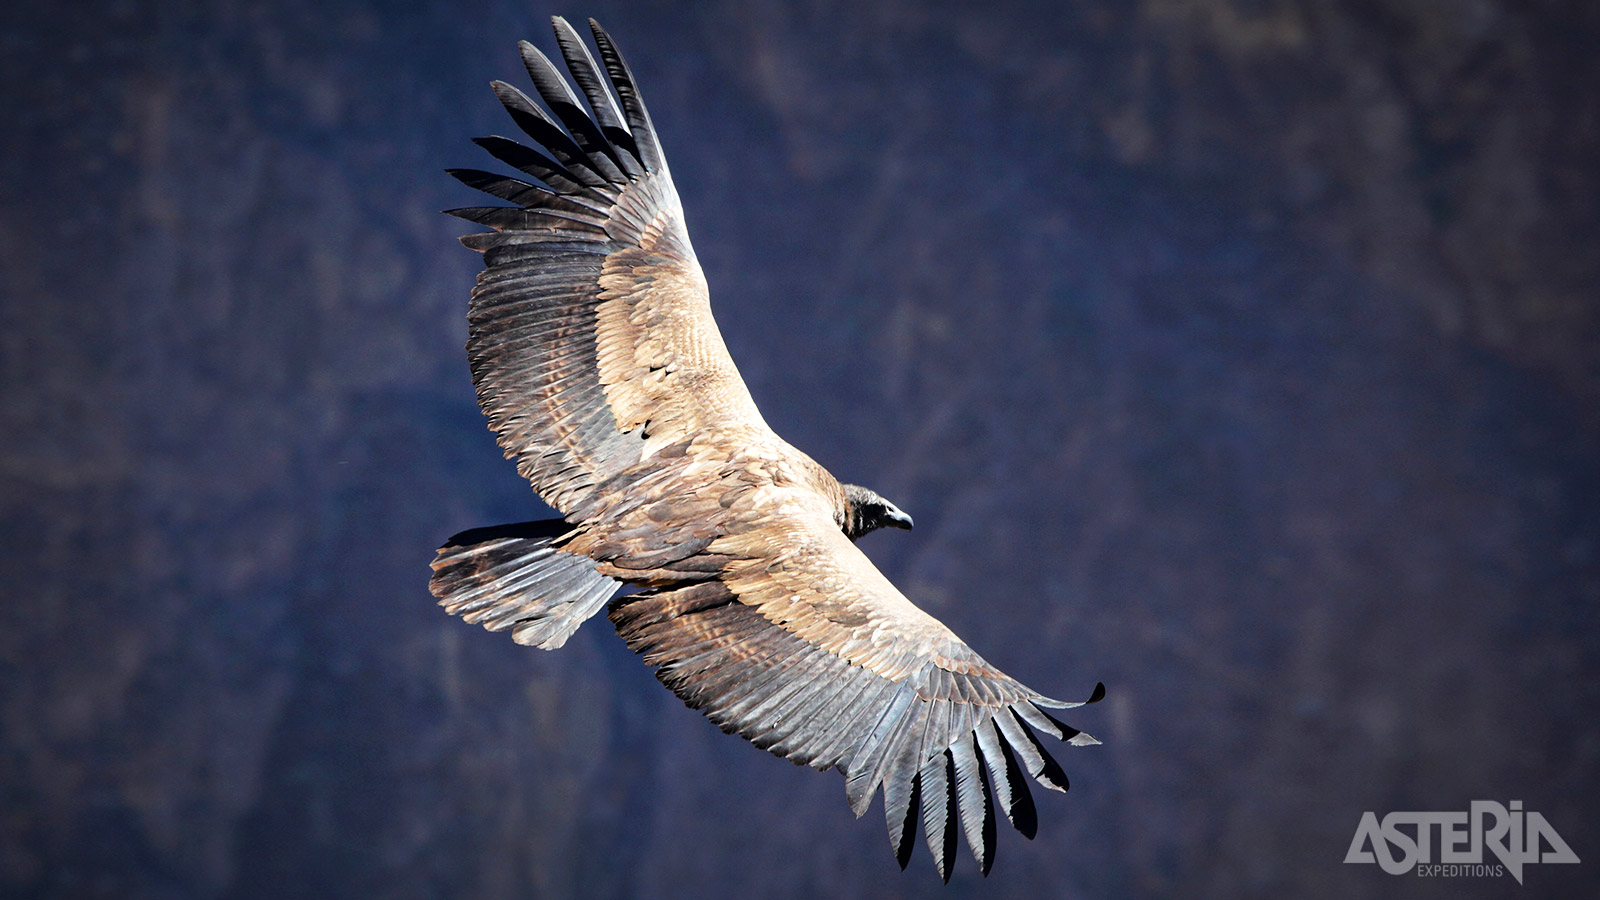 Cruz del Condor is het woongebied van de indrukwekkende Andes Condor met een spanwijdte tot meer dan 3m